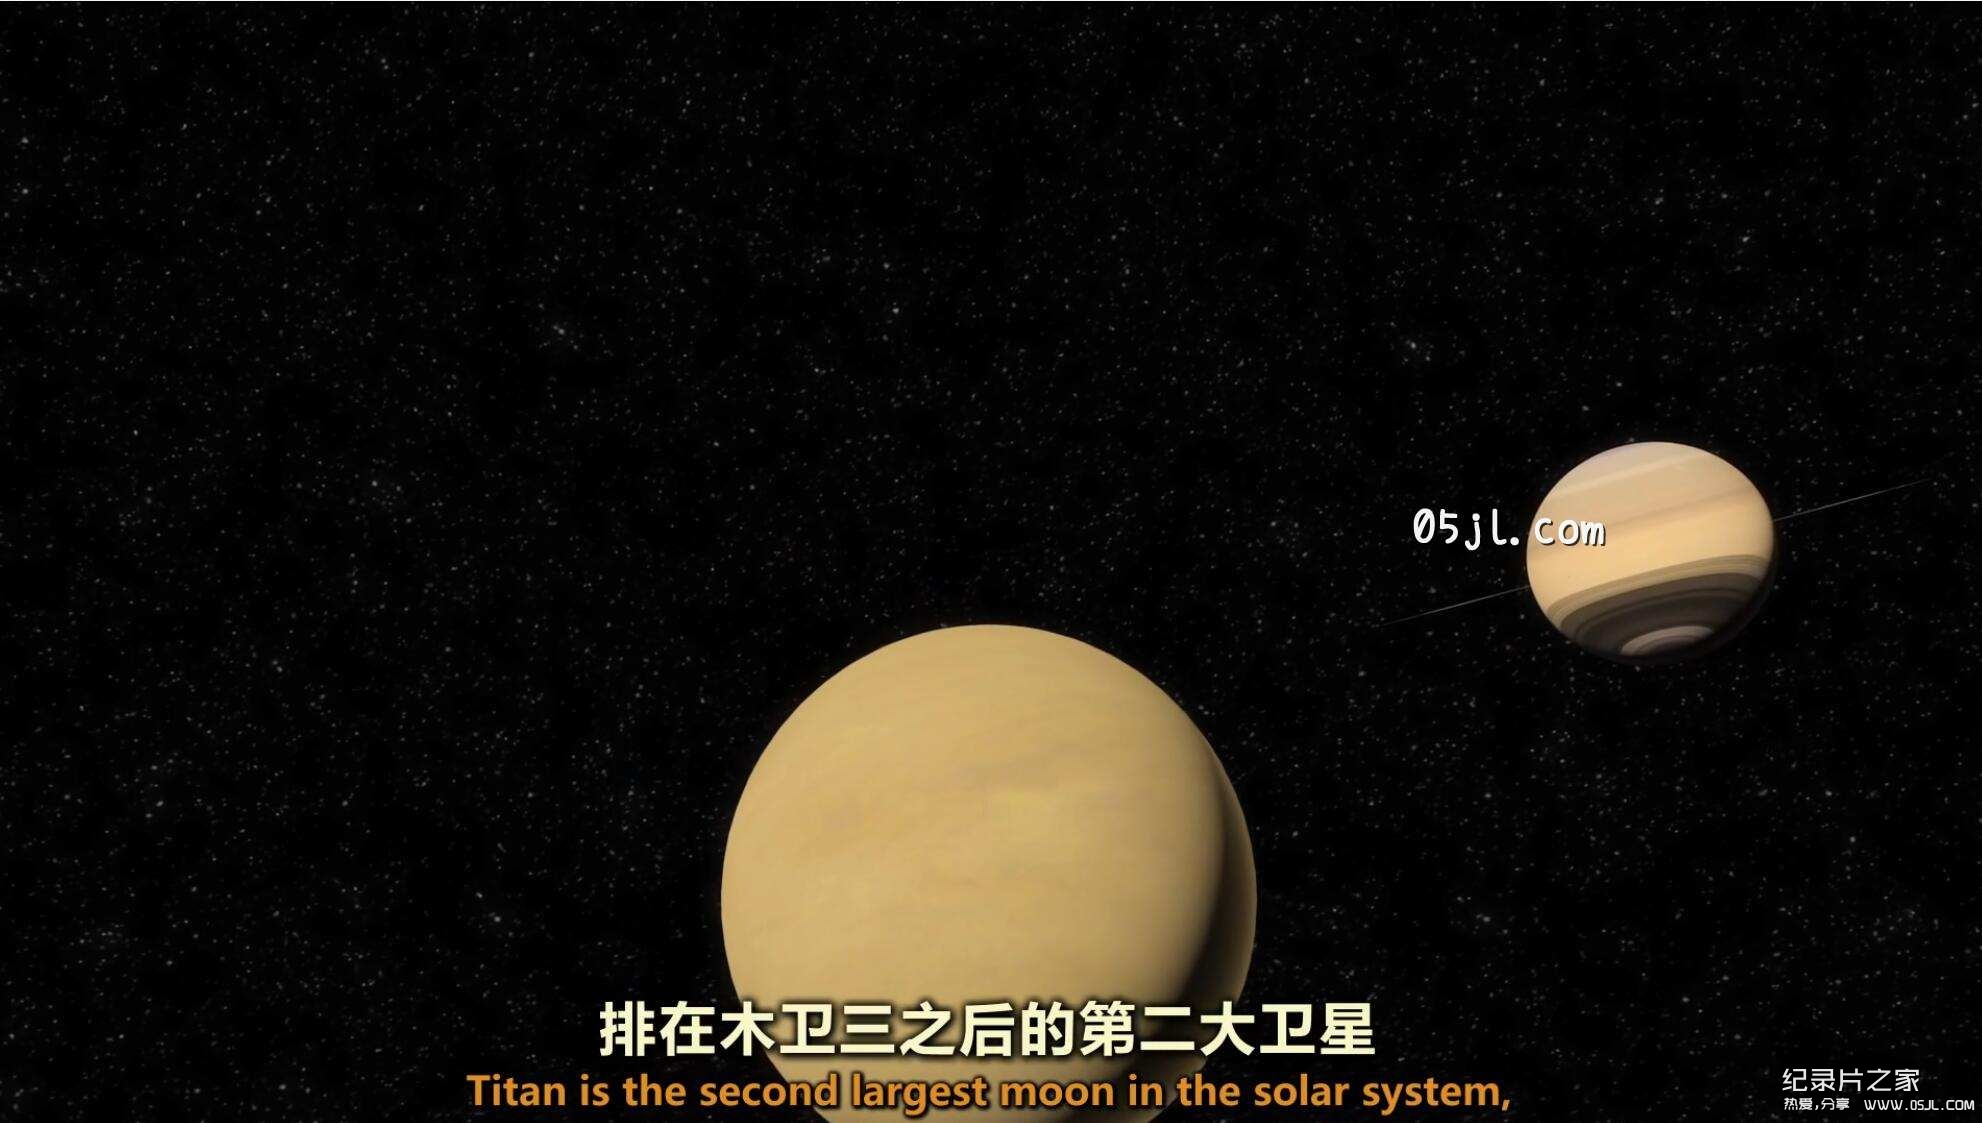 【英语中英字幕】穿越苍穹：行者无疆 Across the Universe: The Voyager Show (2011)图片 No.3